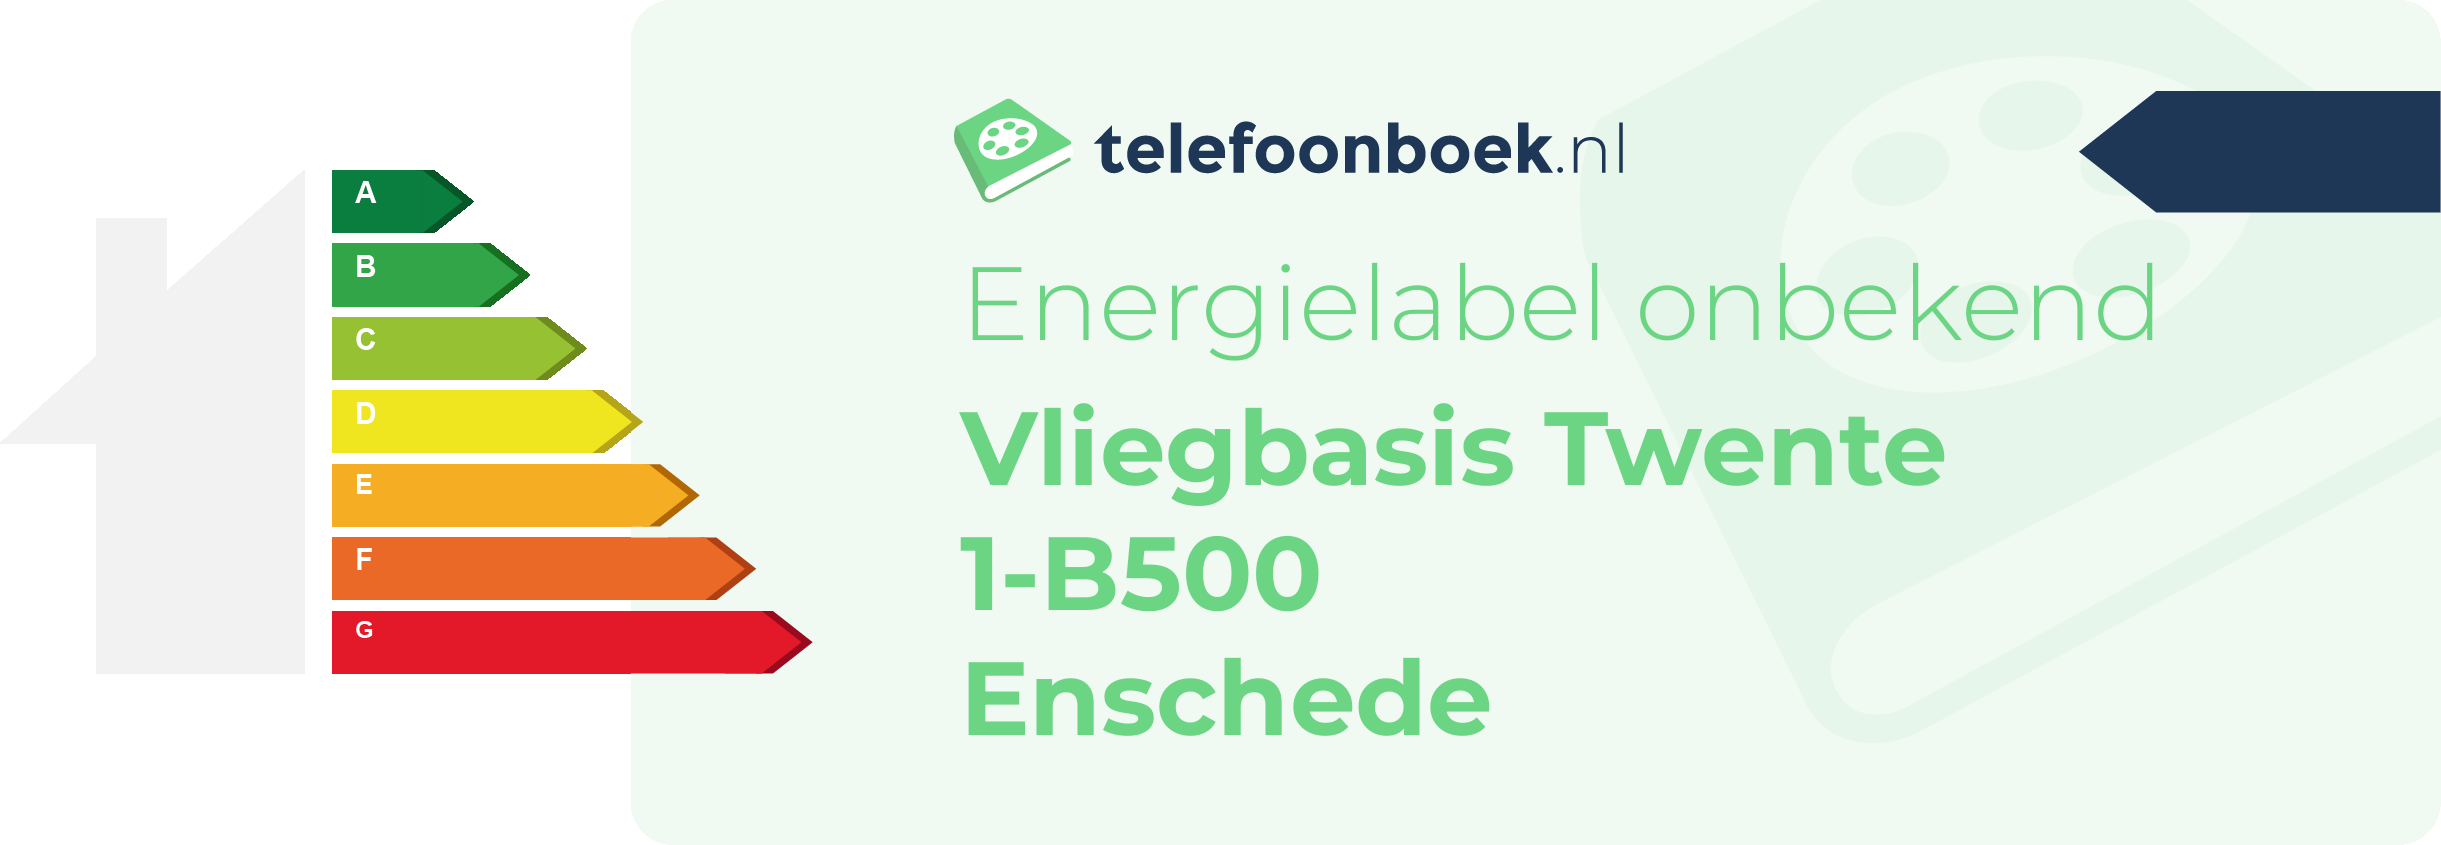 Energielabel Vliegbasis Twente 1-B500 Enschede